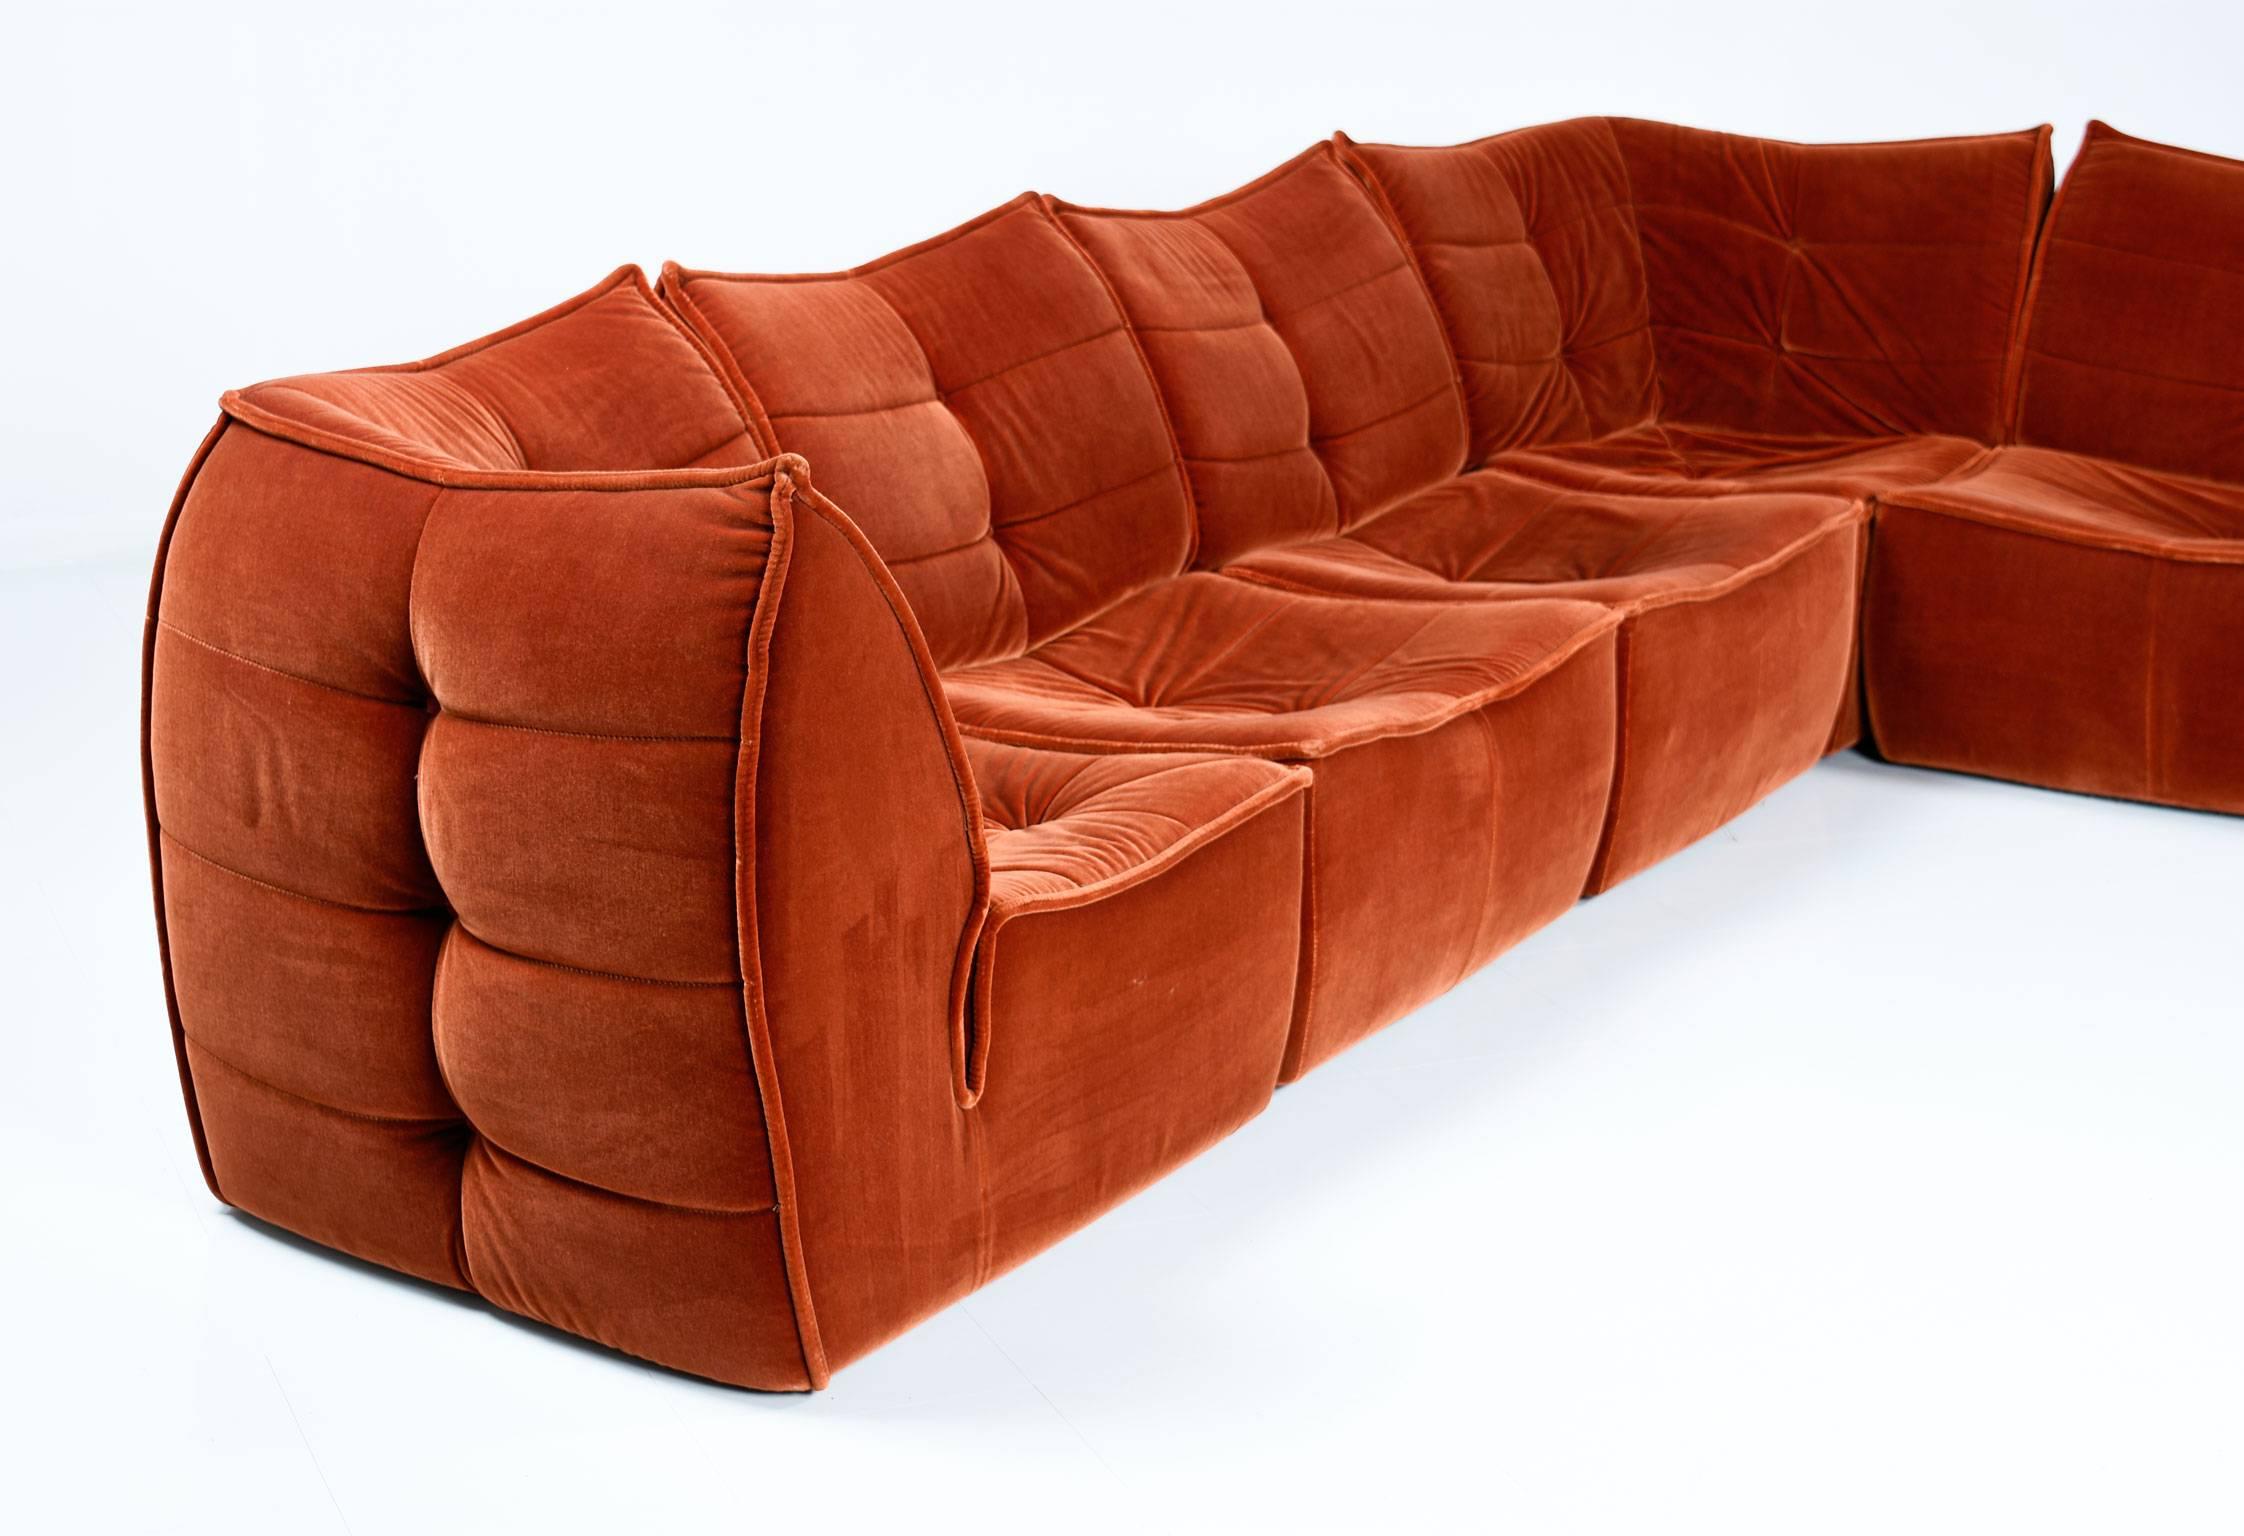 70s velvet couch